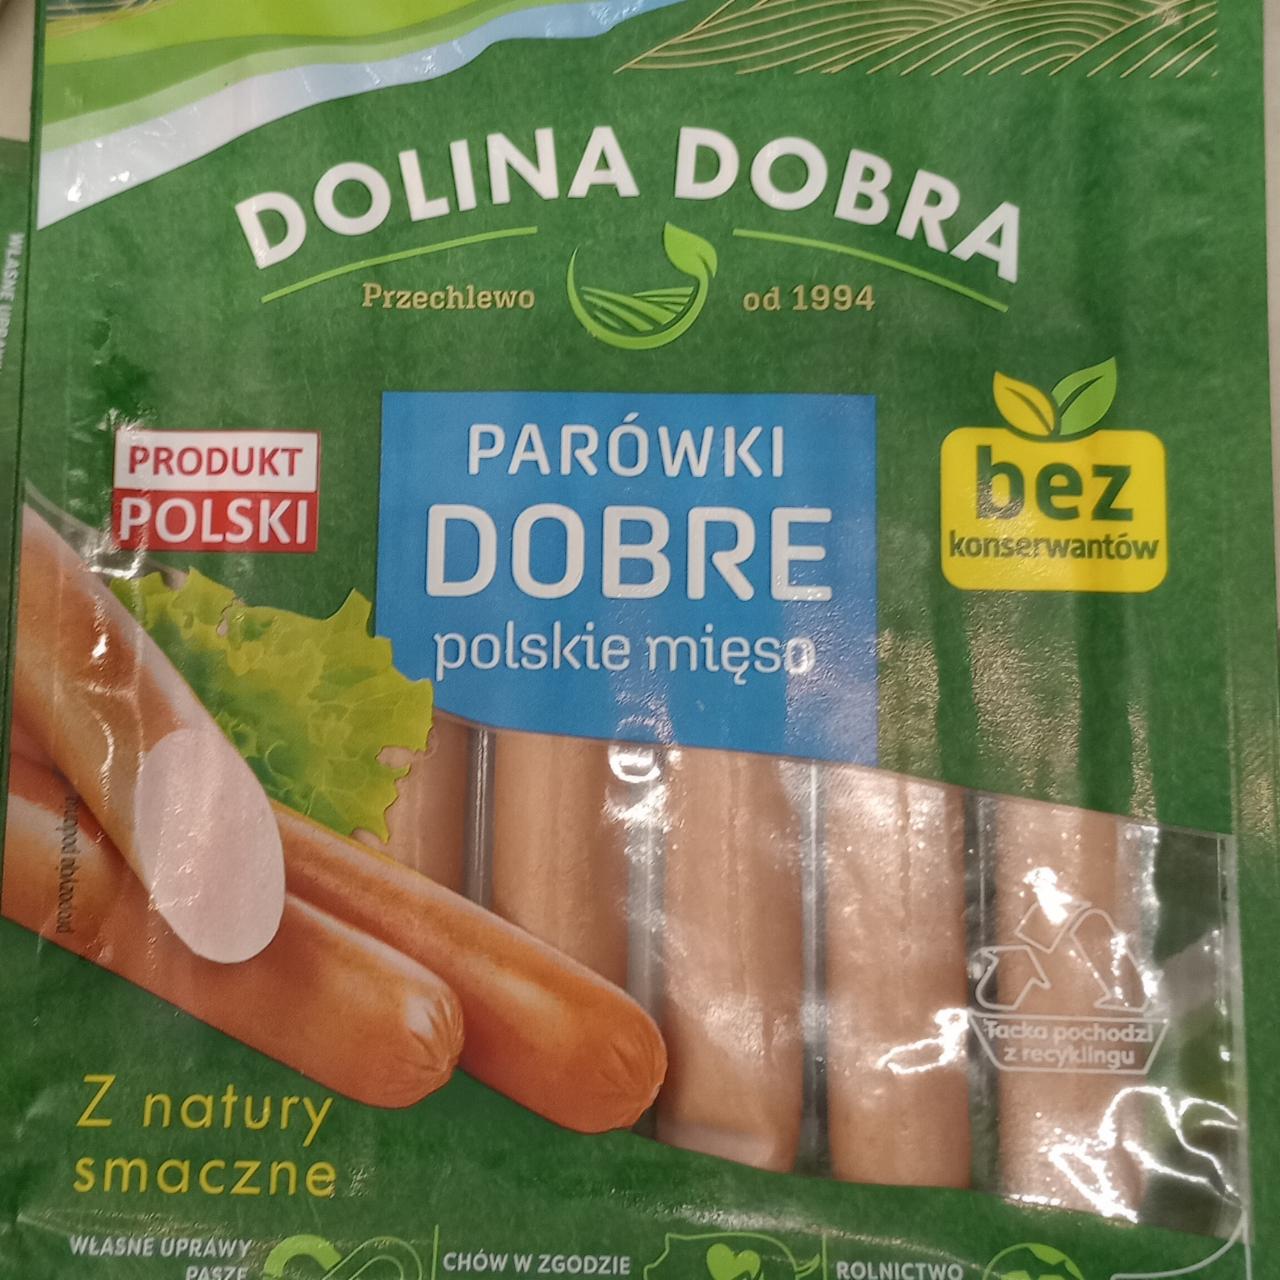 Zdjęcia - Dolina Dobra Parówki dobre polskie mięso 200 g